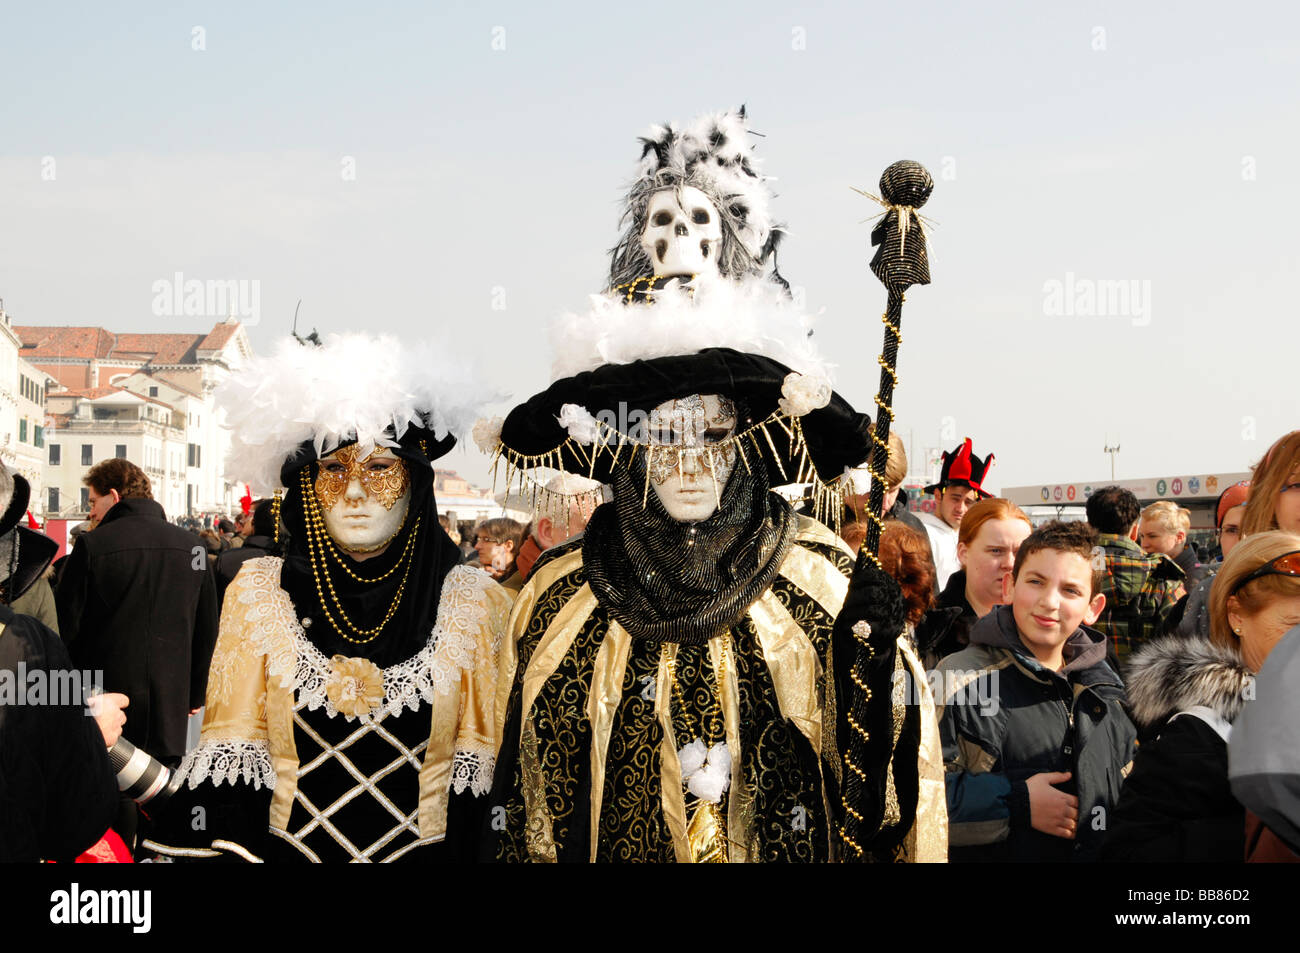 Masques, Carnevale 2009, Carnaval de Venise, Vénétie, Italie, Europe Banque D'Images